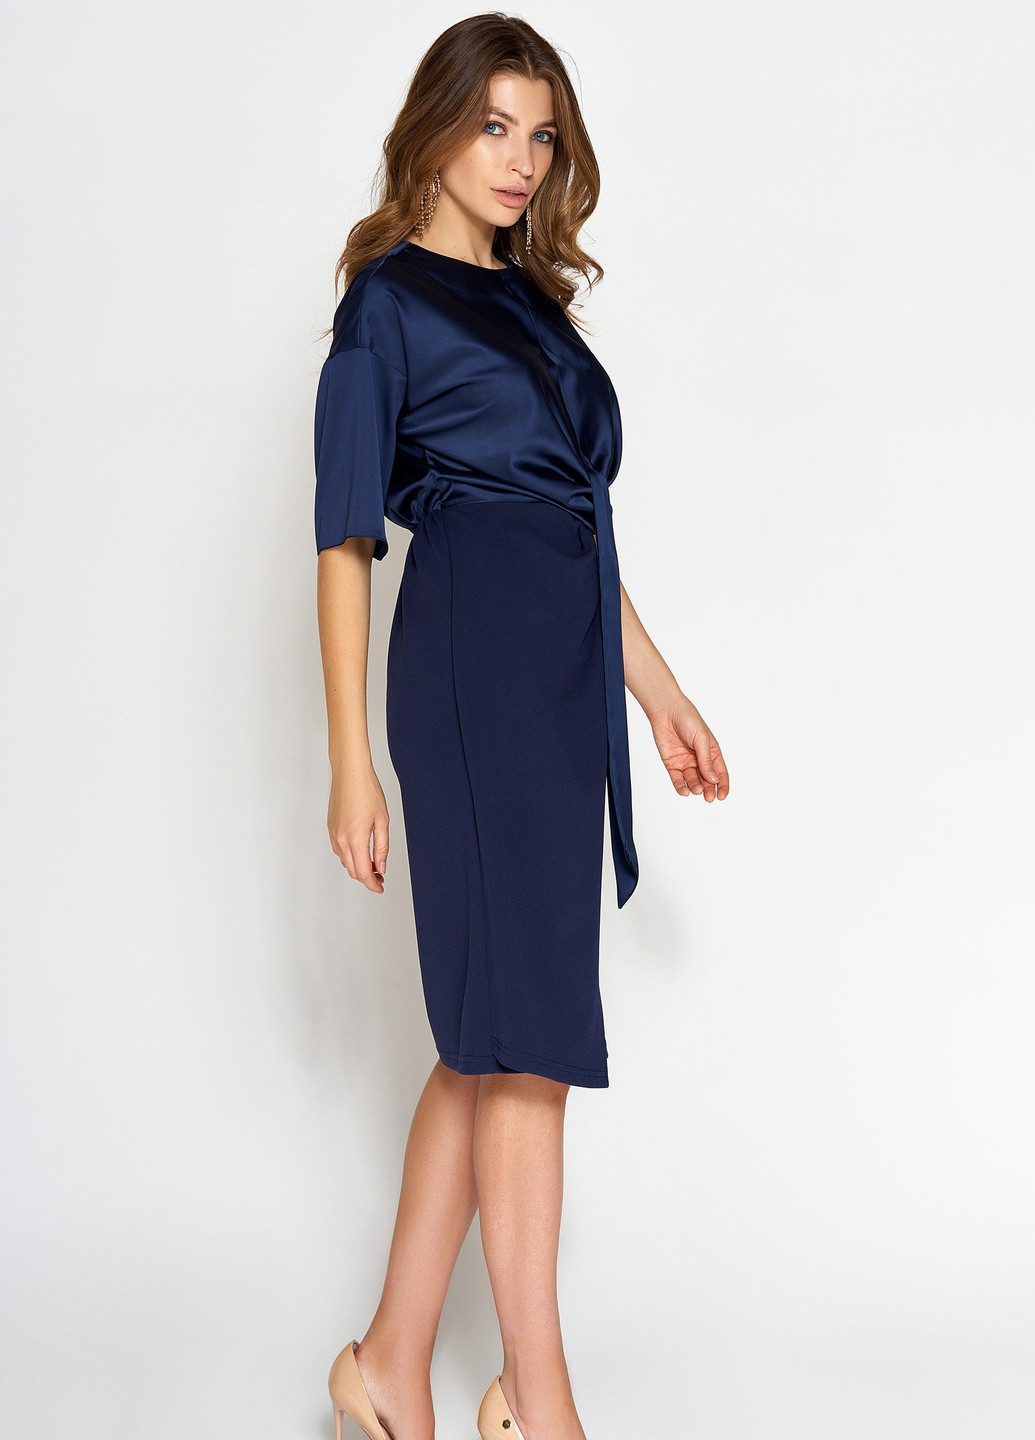 Темно-синя повсякденний сукня у класичному стилі темно-синього кольору Jadone Fashion